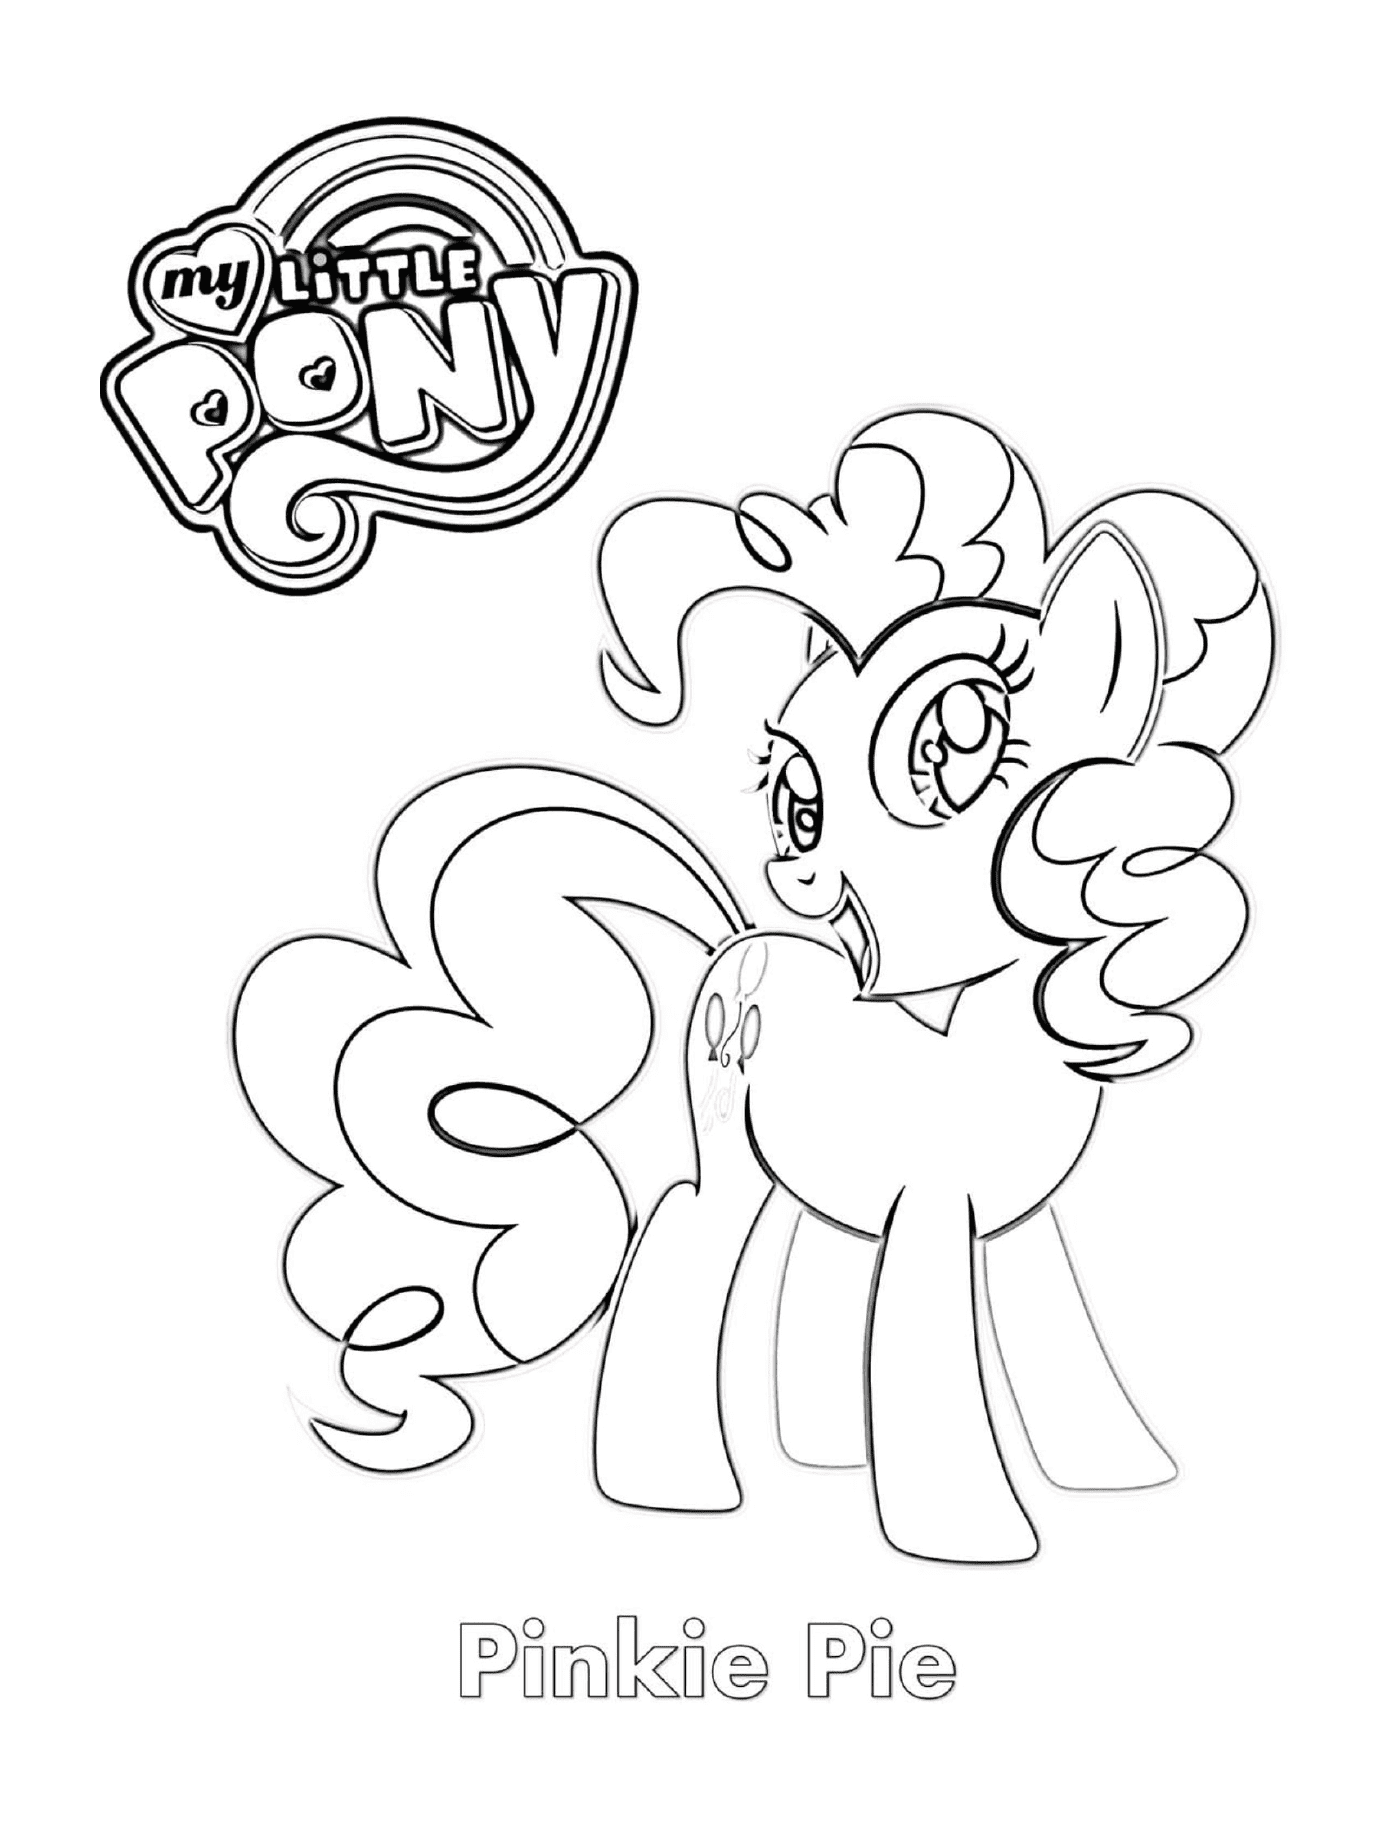  Pinkie Pie, ein süßes Pony 